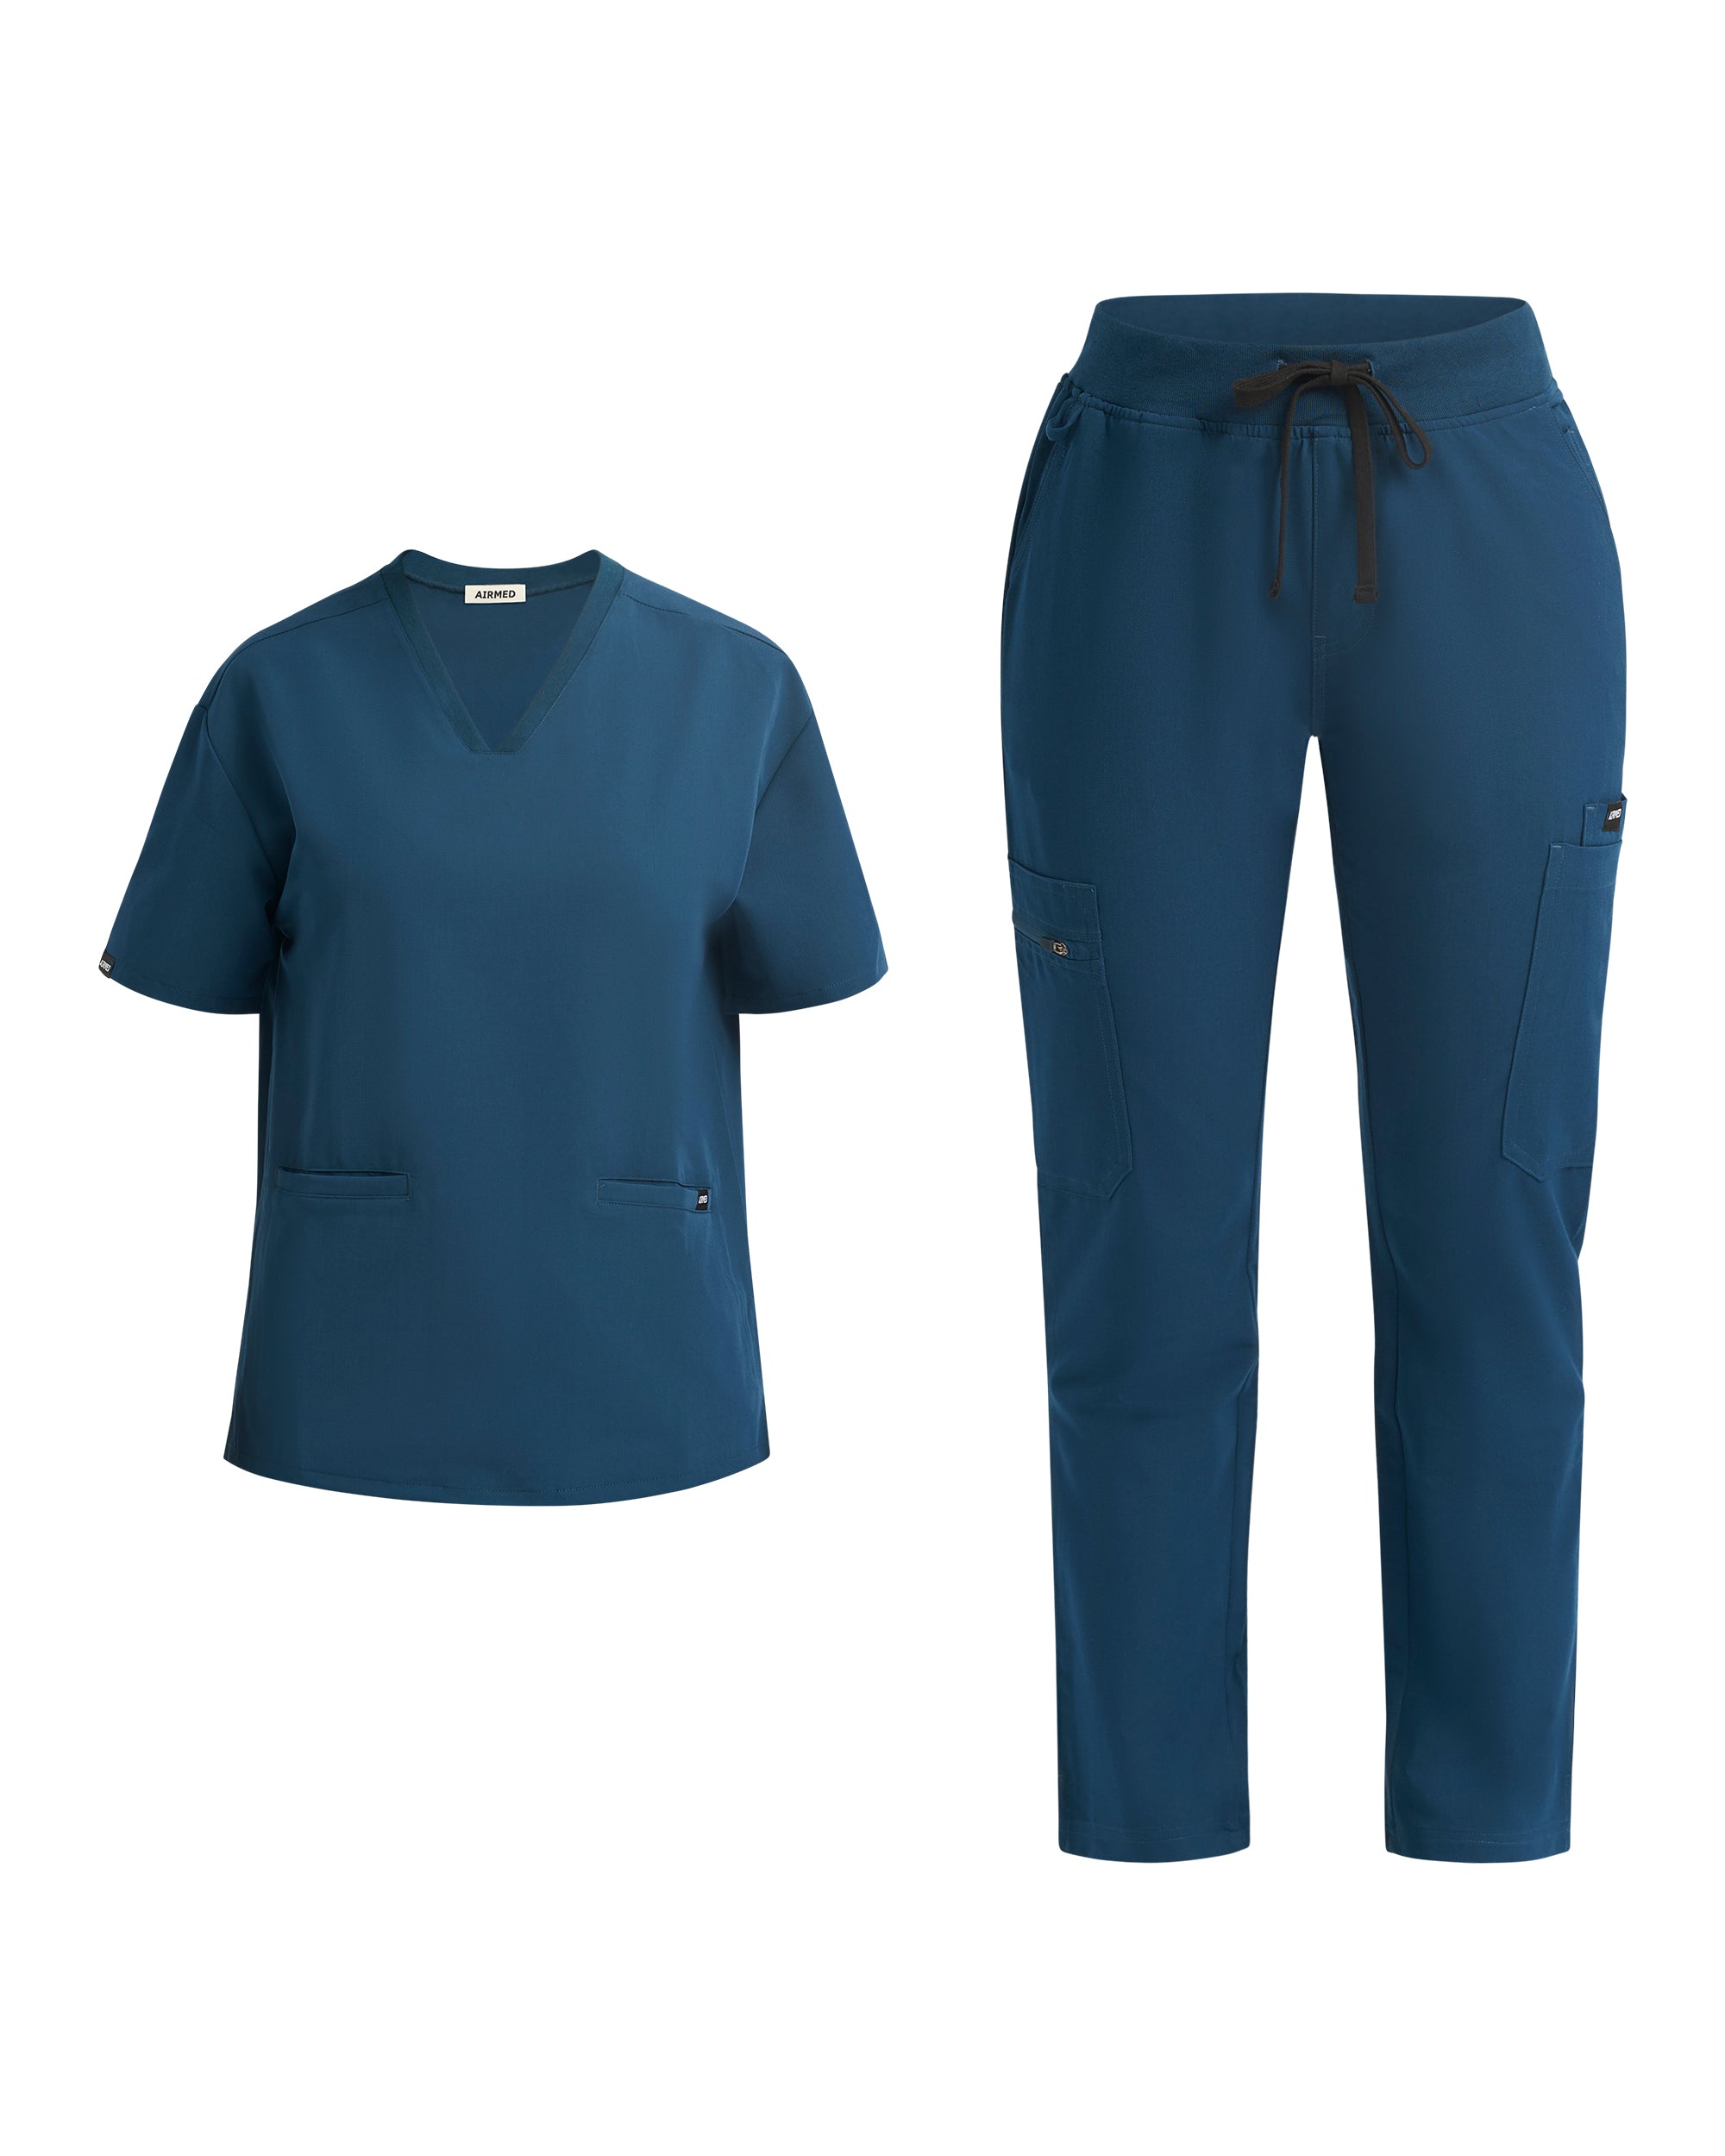 Gibraltar Blue V Neck Top and Multi-Pocket Scrub Pants Set